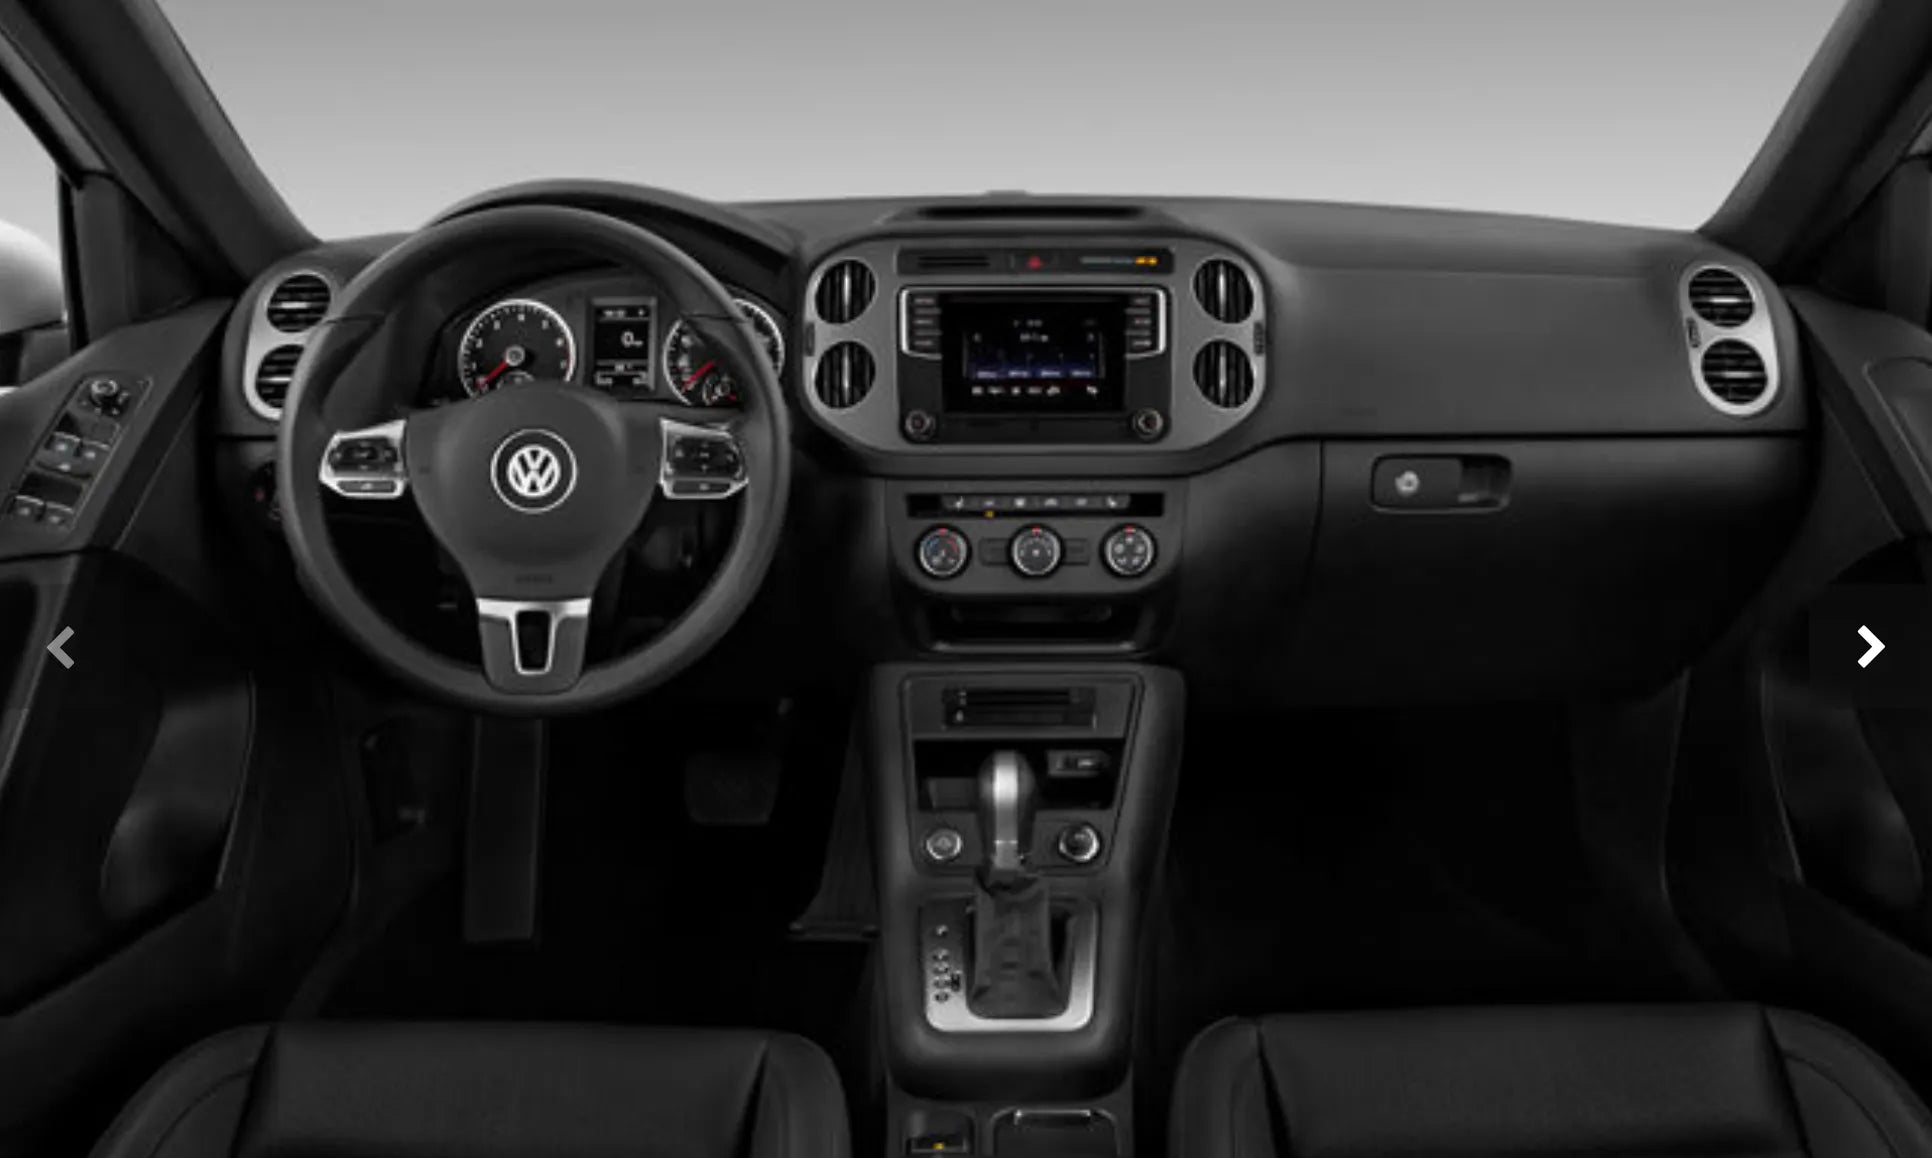 Volkswagen Tiguan 2009 - 2017 Radio Replacement Parts